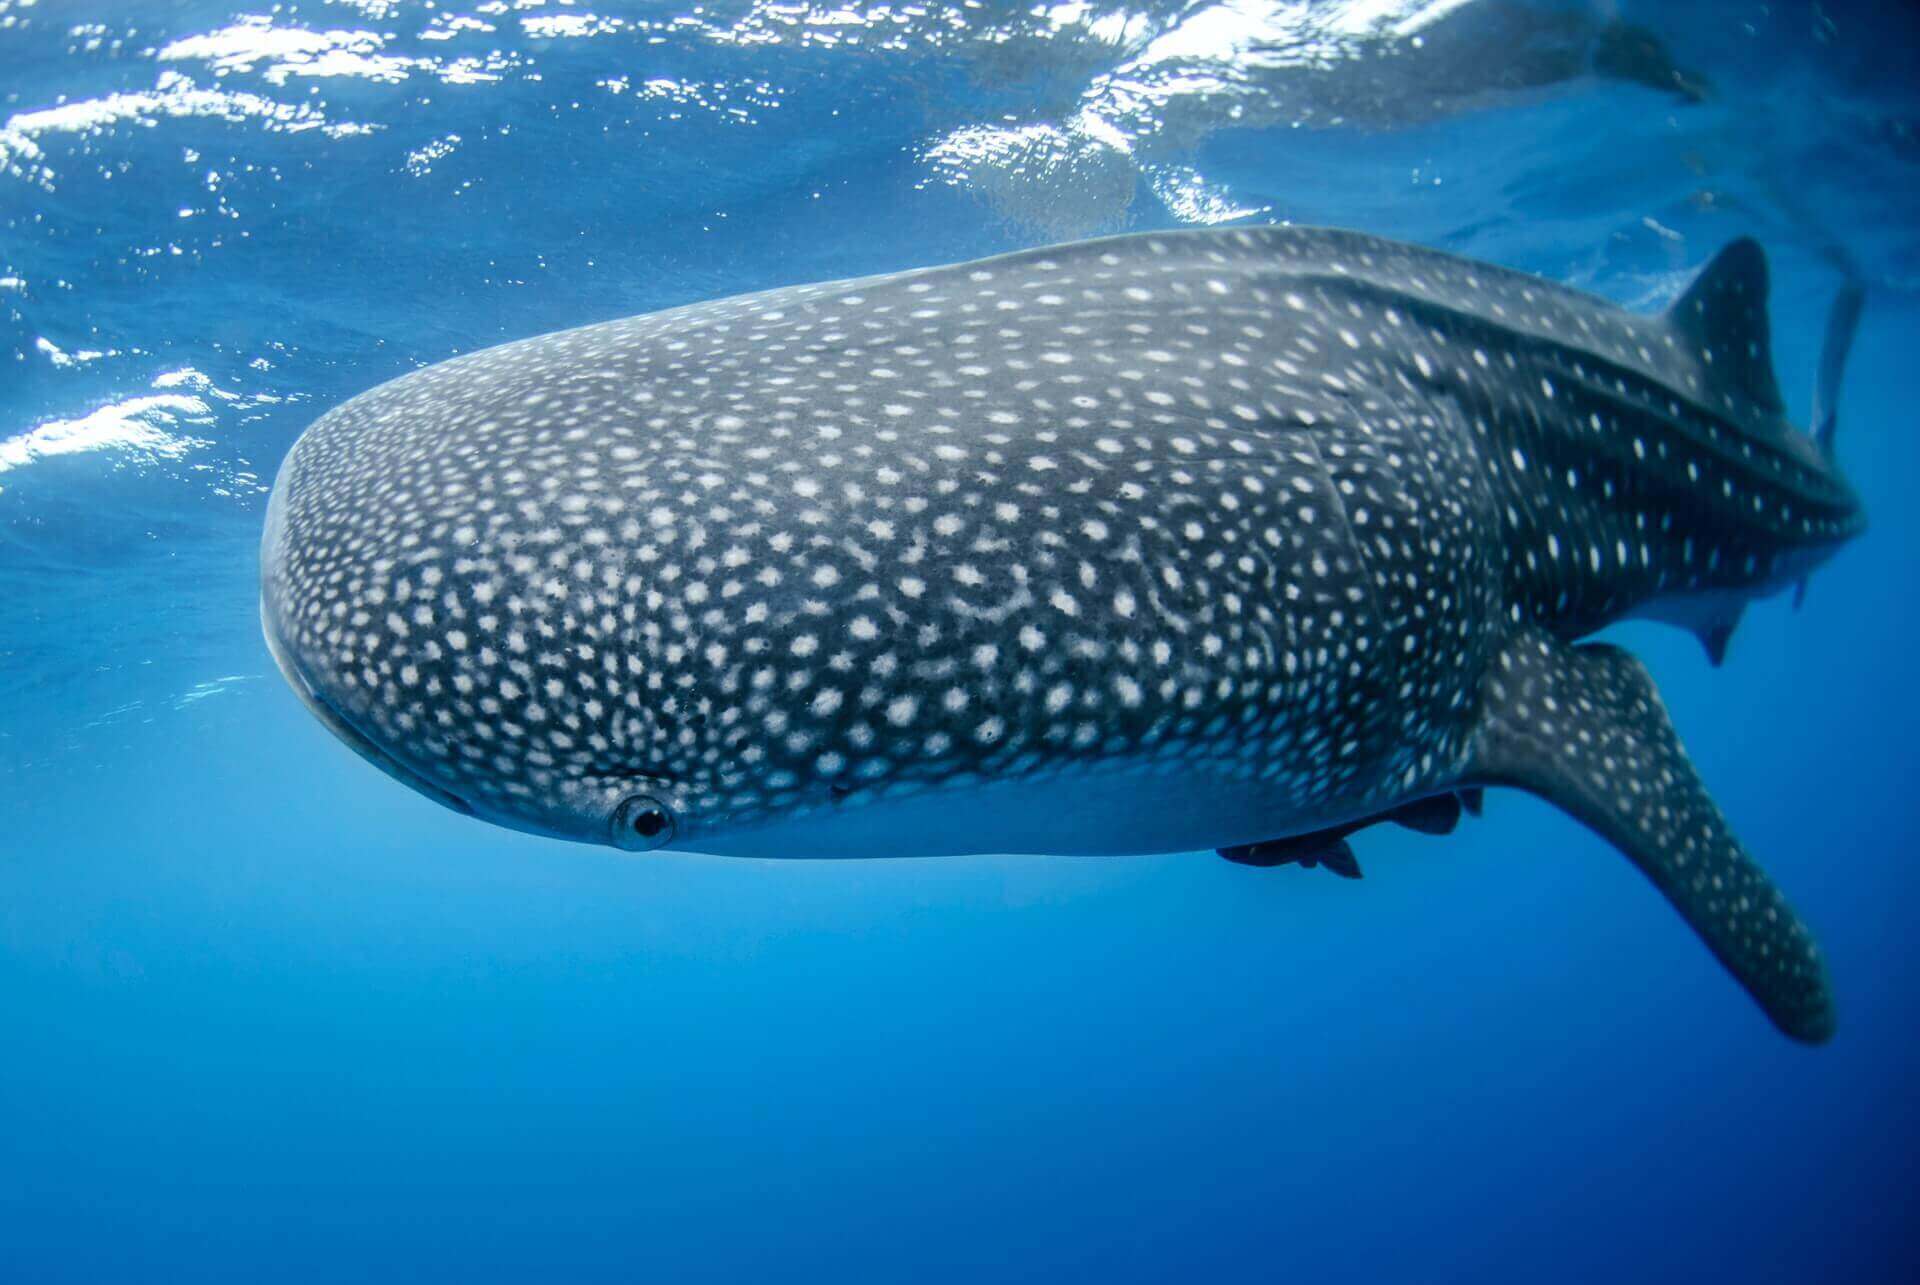 Estas enormes criaturas pueden llegar a medir 12 metros de largo (unos 65 pies) y pesar 75.000 libras. El tamaño de un tiburón ballena rivaliza con el de las grandes ballenas, pero a pesar de sus impresionantes proporciones, a los tiburones ballena se les suele llamar 